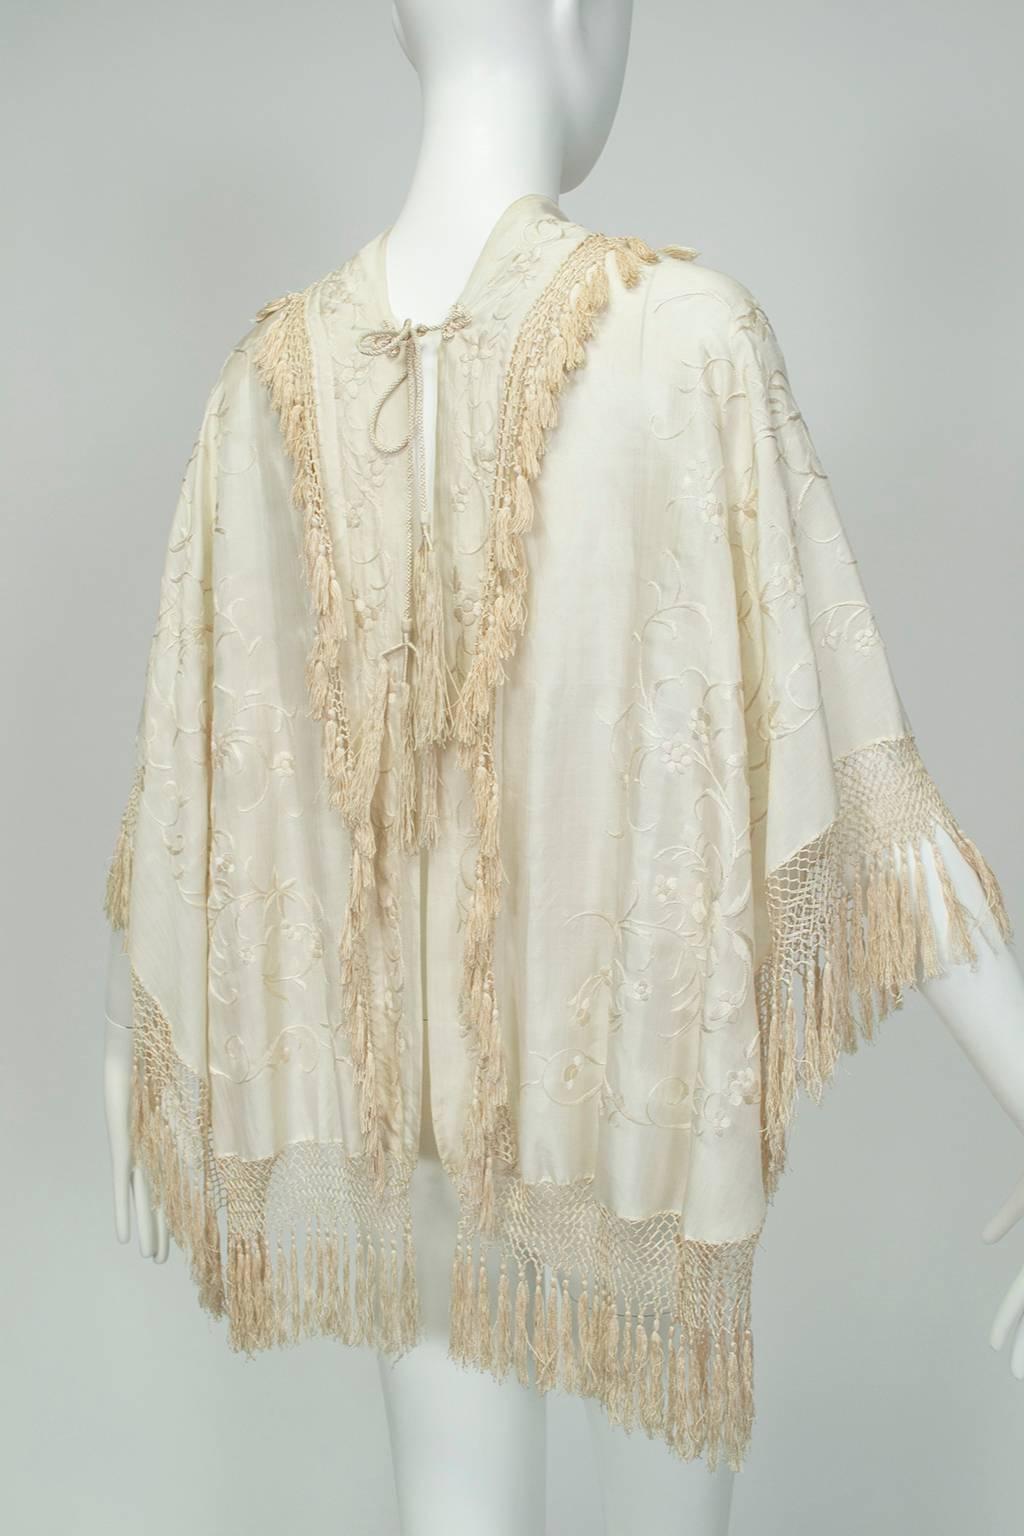 silk wedding shawl